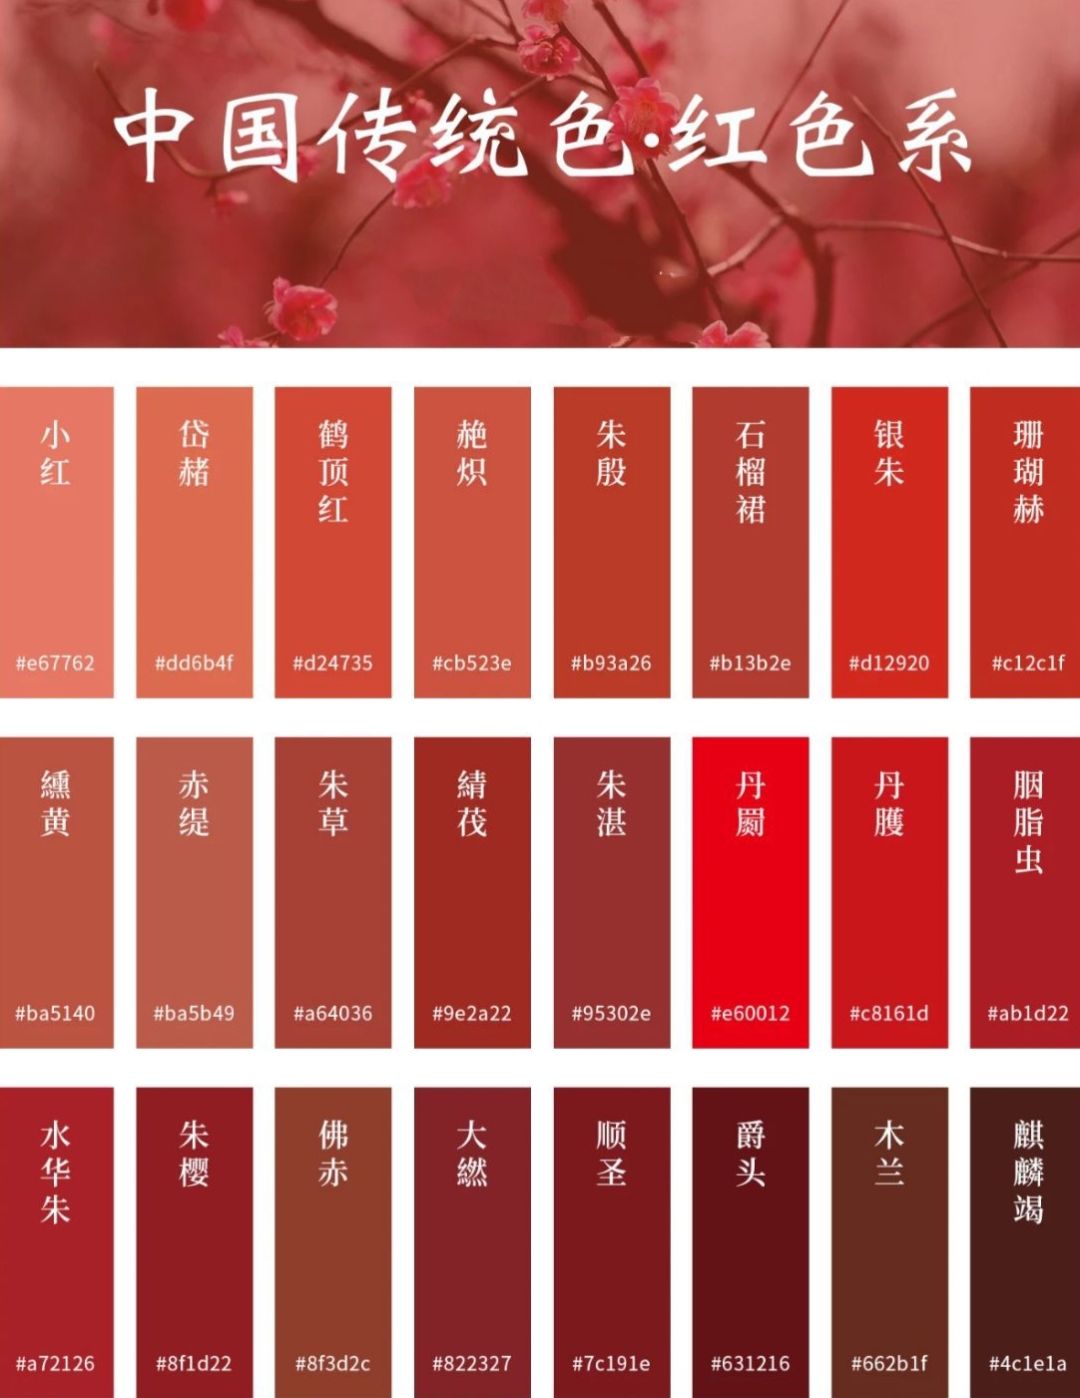 中国传统色——红色系
肃肃花絮晚，菲菲红素轻。——《春运》
西南科技大学雷普凡 制